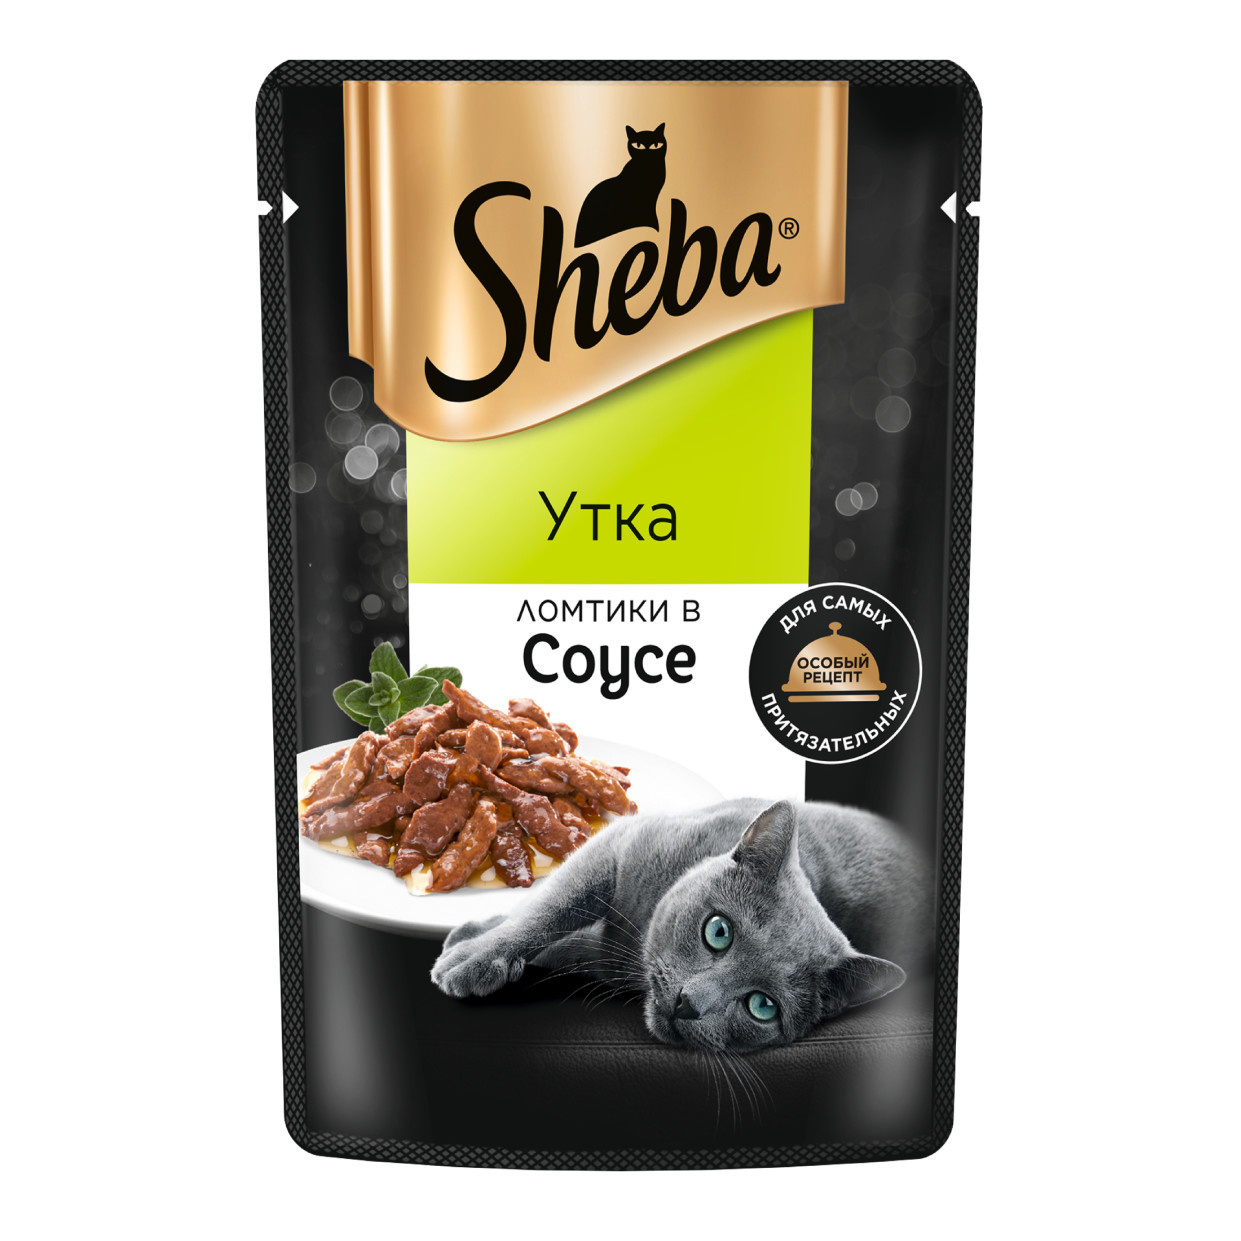 Sheba Sheba влажный корм для кошек «Ломтики в соусе с уткой» (75 г)